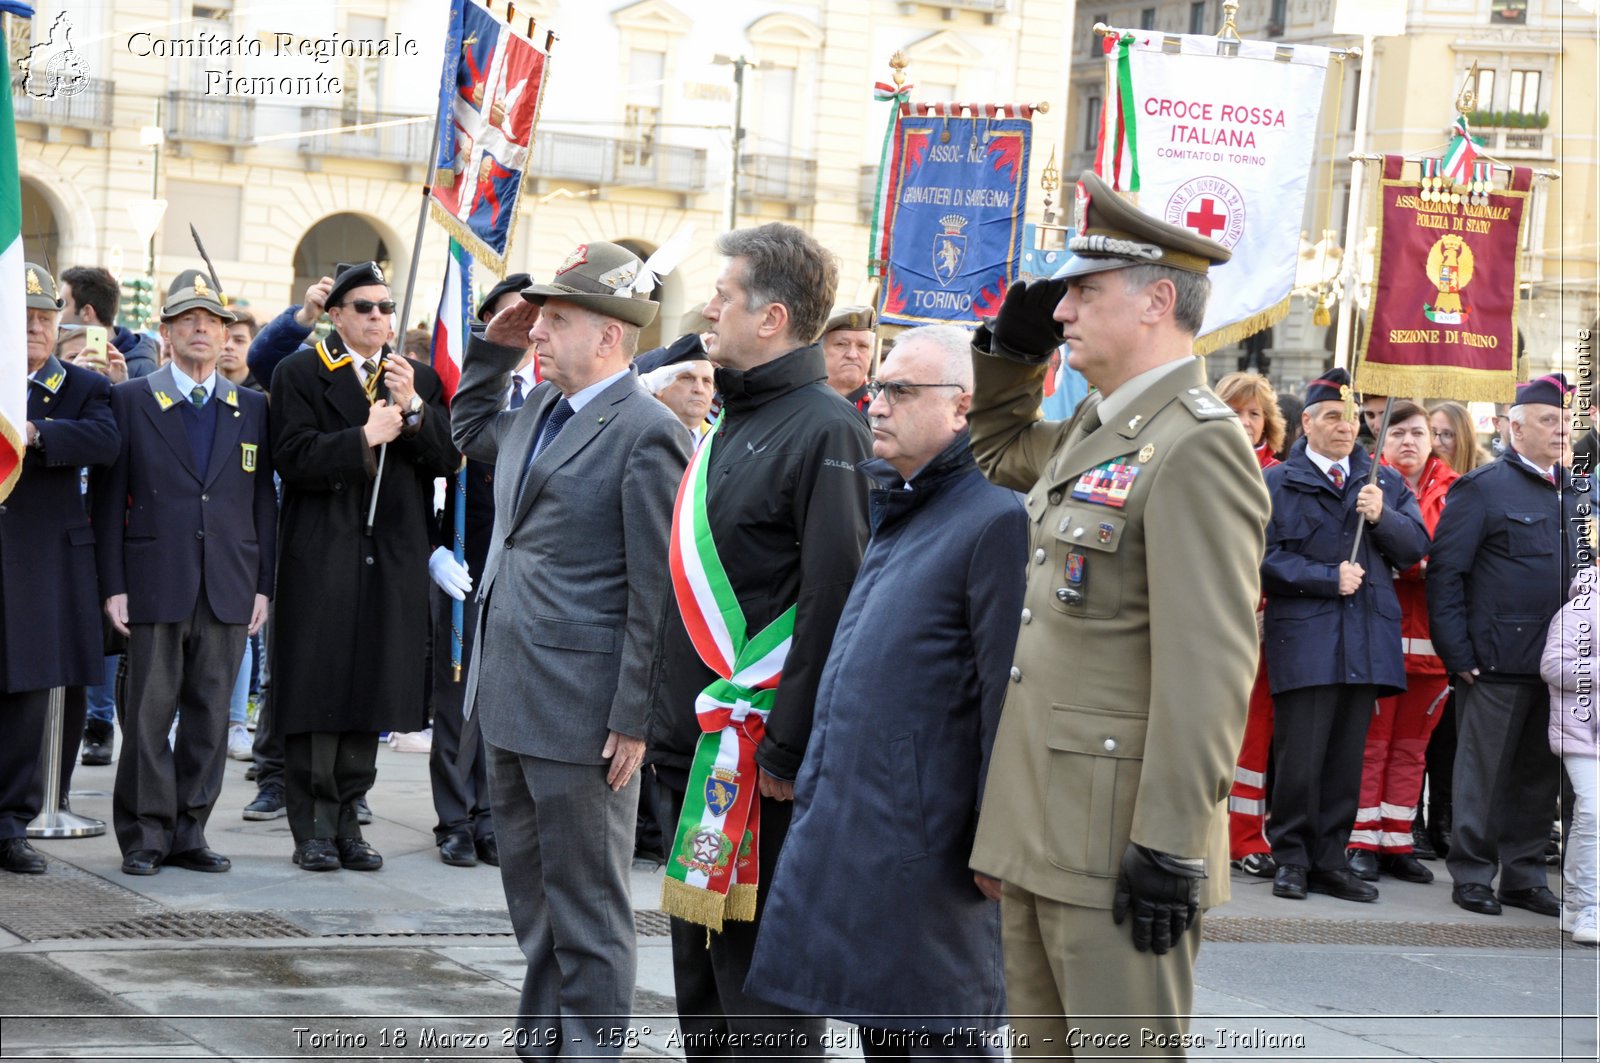 Torino 18 Marzo 2019 - 158 Anniversario dell'Unit d'Italia - Croce Rossa Italiana - Comitato Regionale del Piemonte